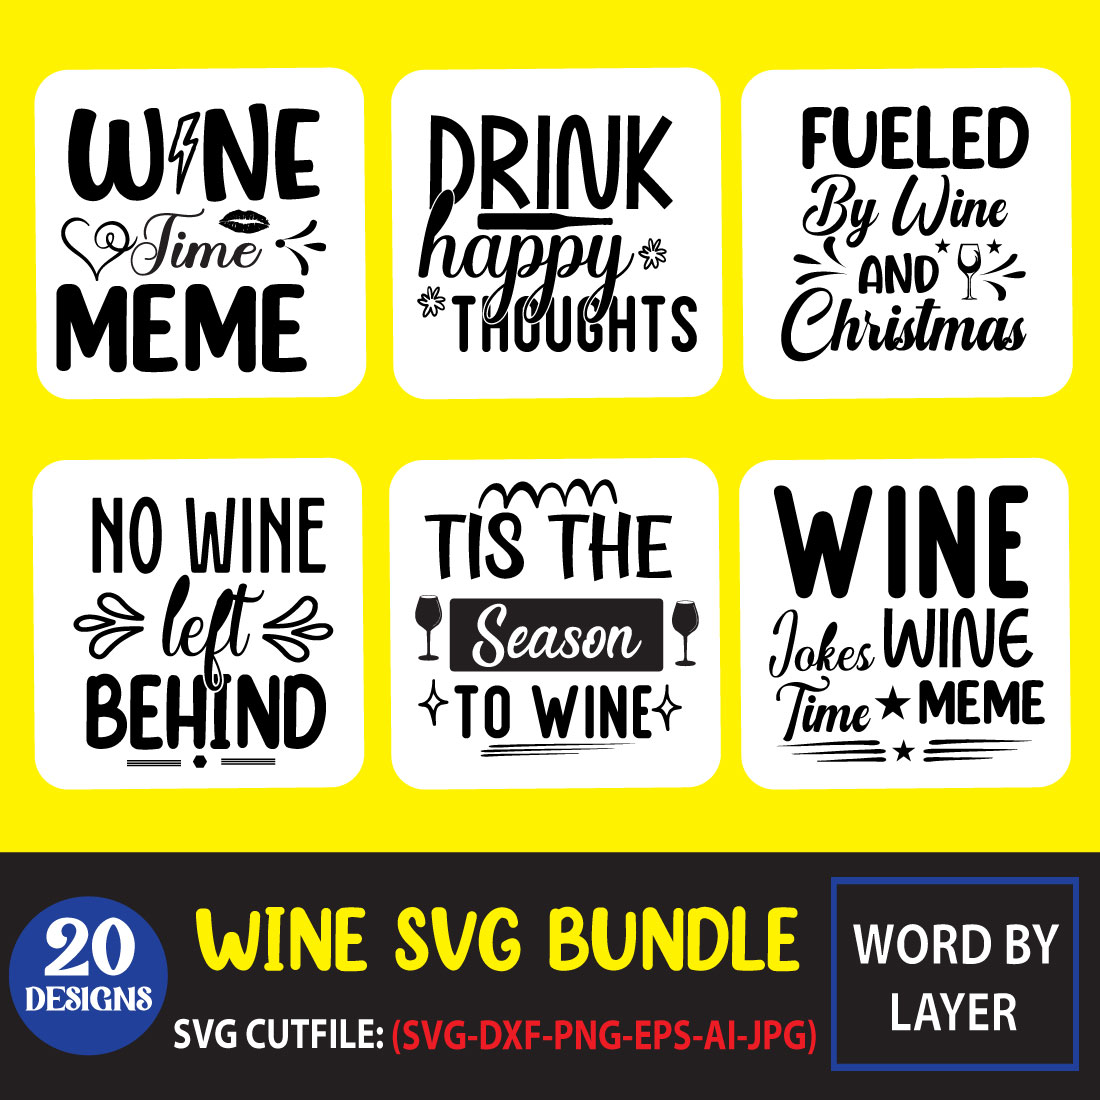 Wine SVG Bundle cover image.